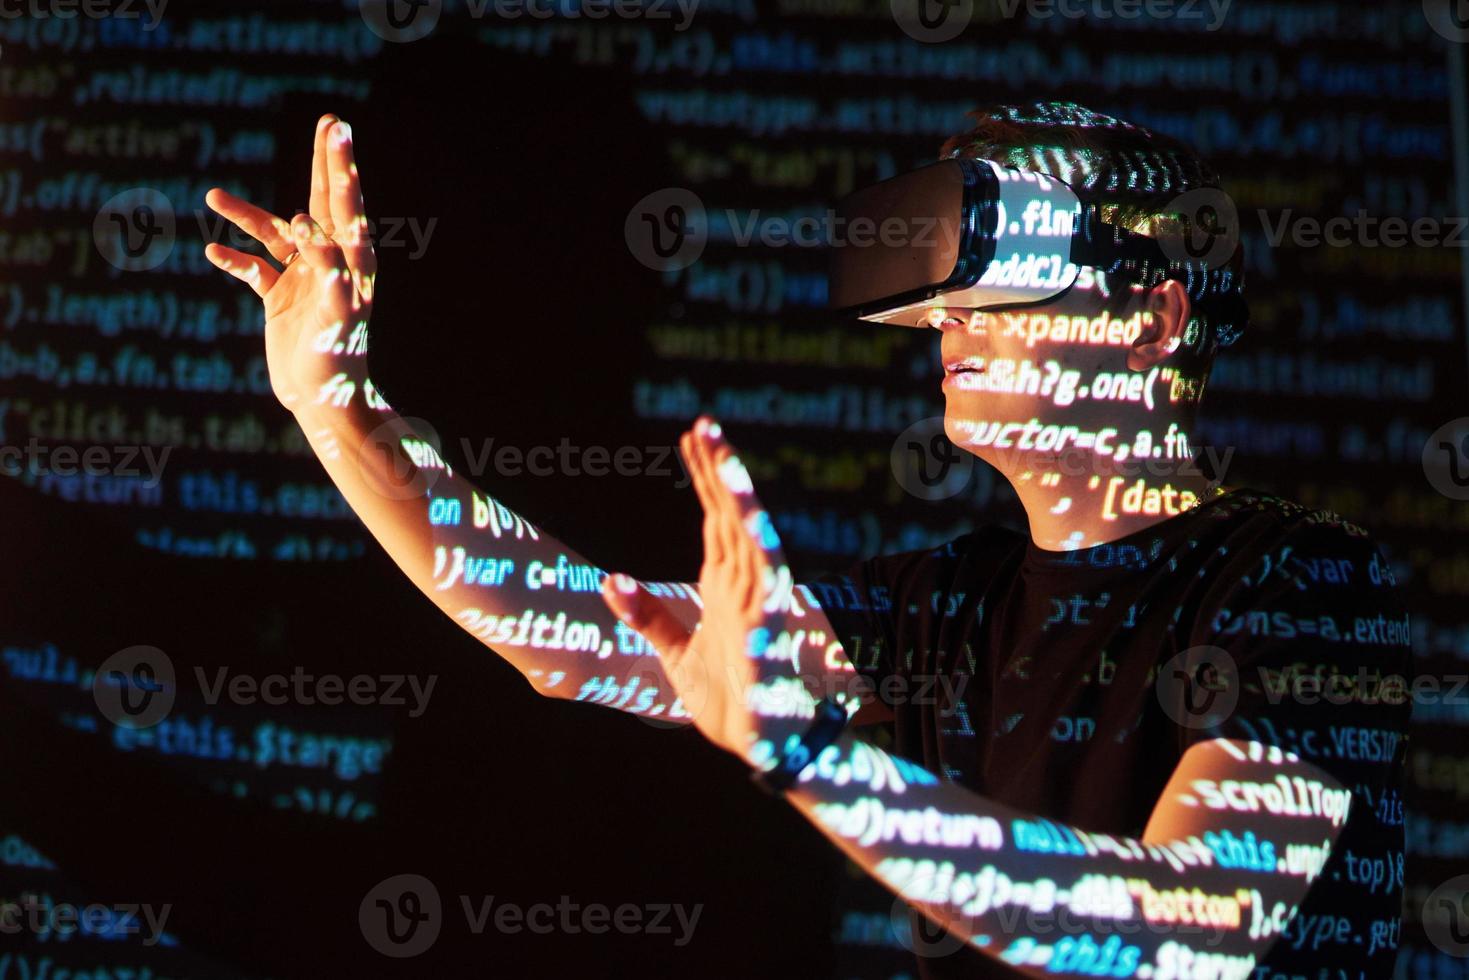 la doble exposición de un hombre caucásico y un casco de realidad virtual es presumiblemente un jugador o un pirata informático que descifra el código en una red o servidor seguro, con líneas de código foto